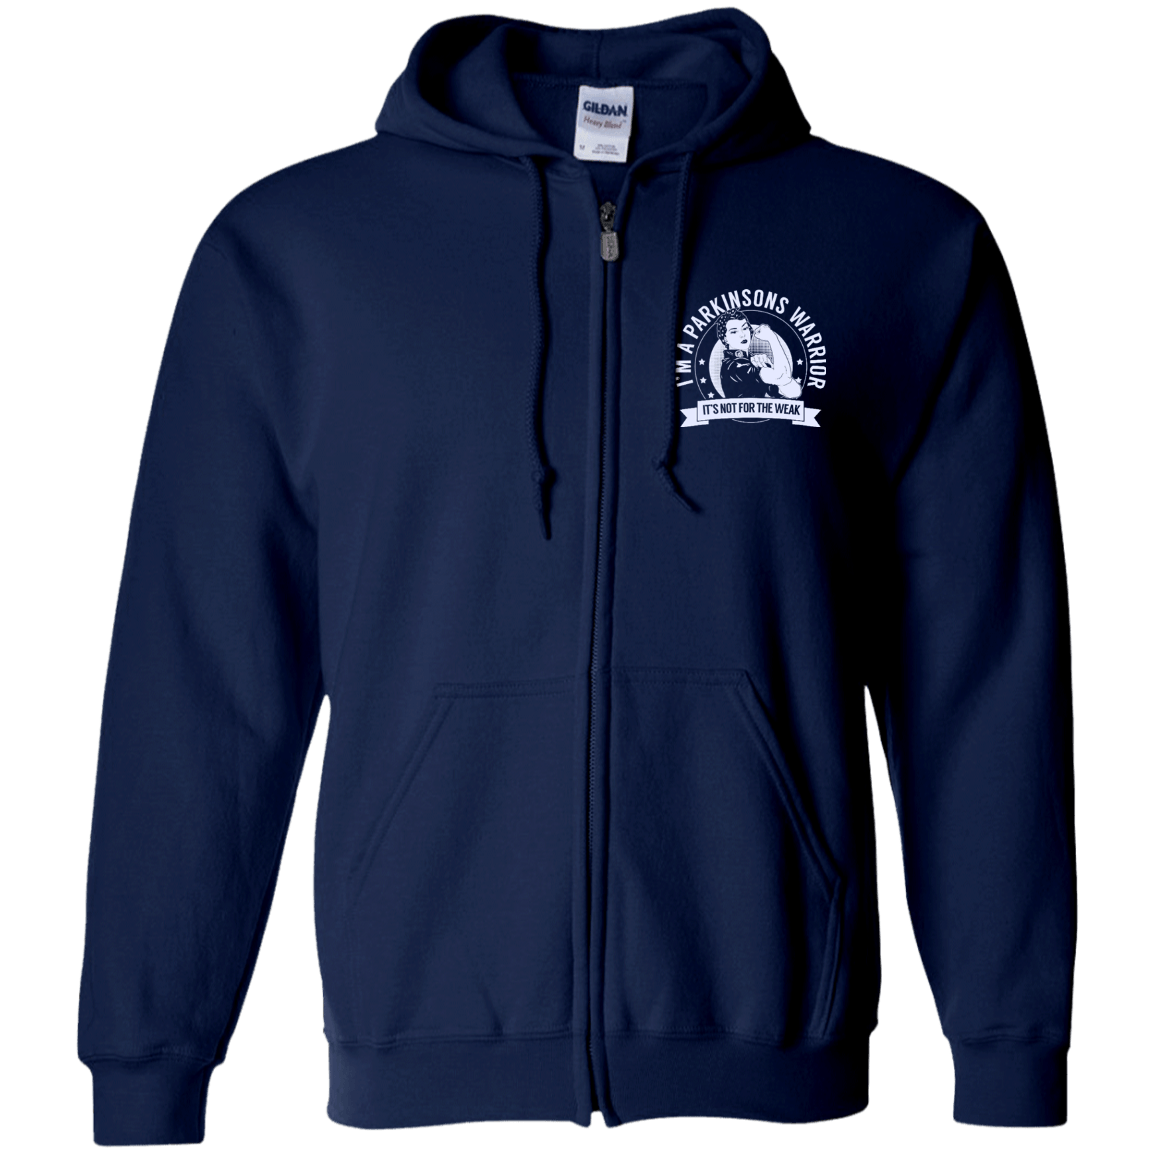 Parkinsons Warrior NFTW Zip Up Hooded Sweatshirt - The Unchargeables